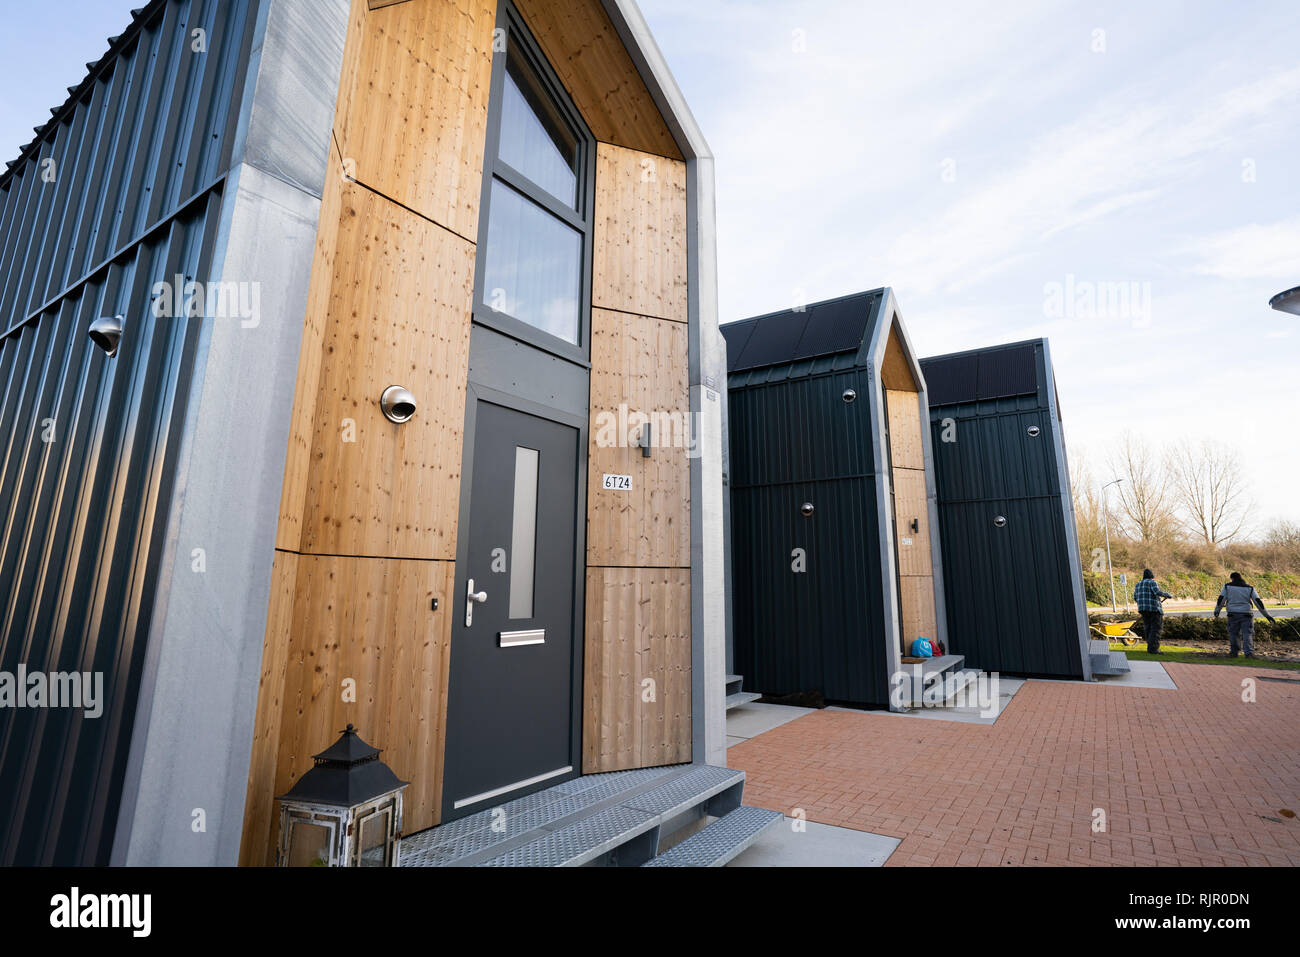 Winzige Häuser in Nijkerk, Niederlande. Zusammen mit dem Housing Corporation das Bauunternehmen winzige Häuser für eine Person im Haushalt gemacht. Stockfoto